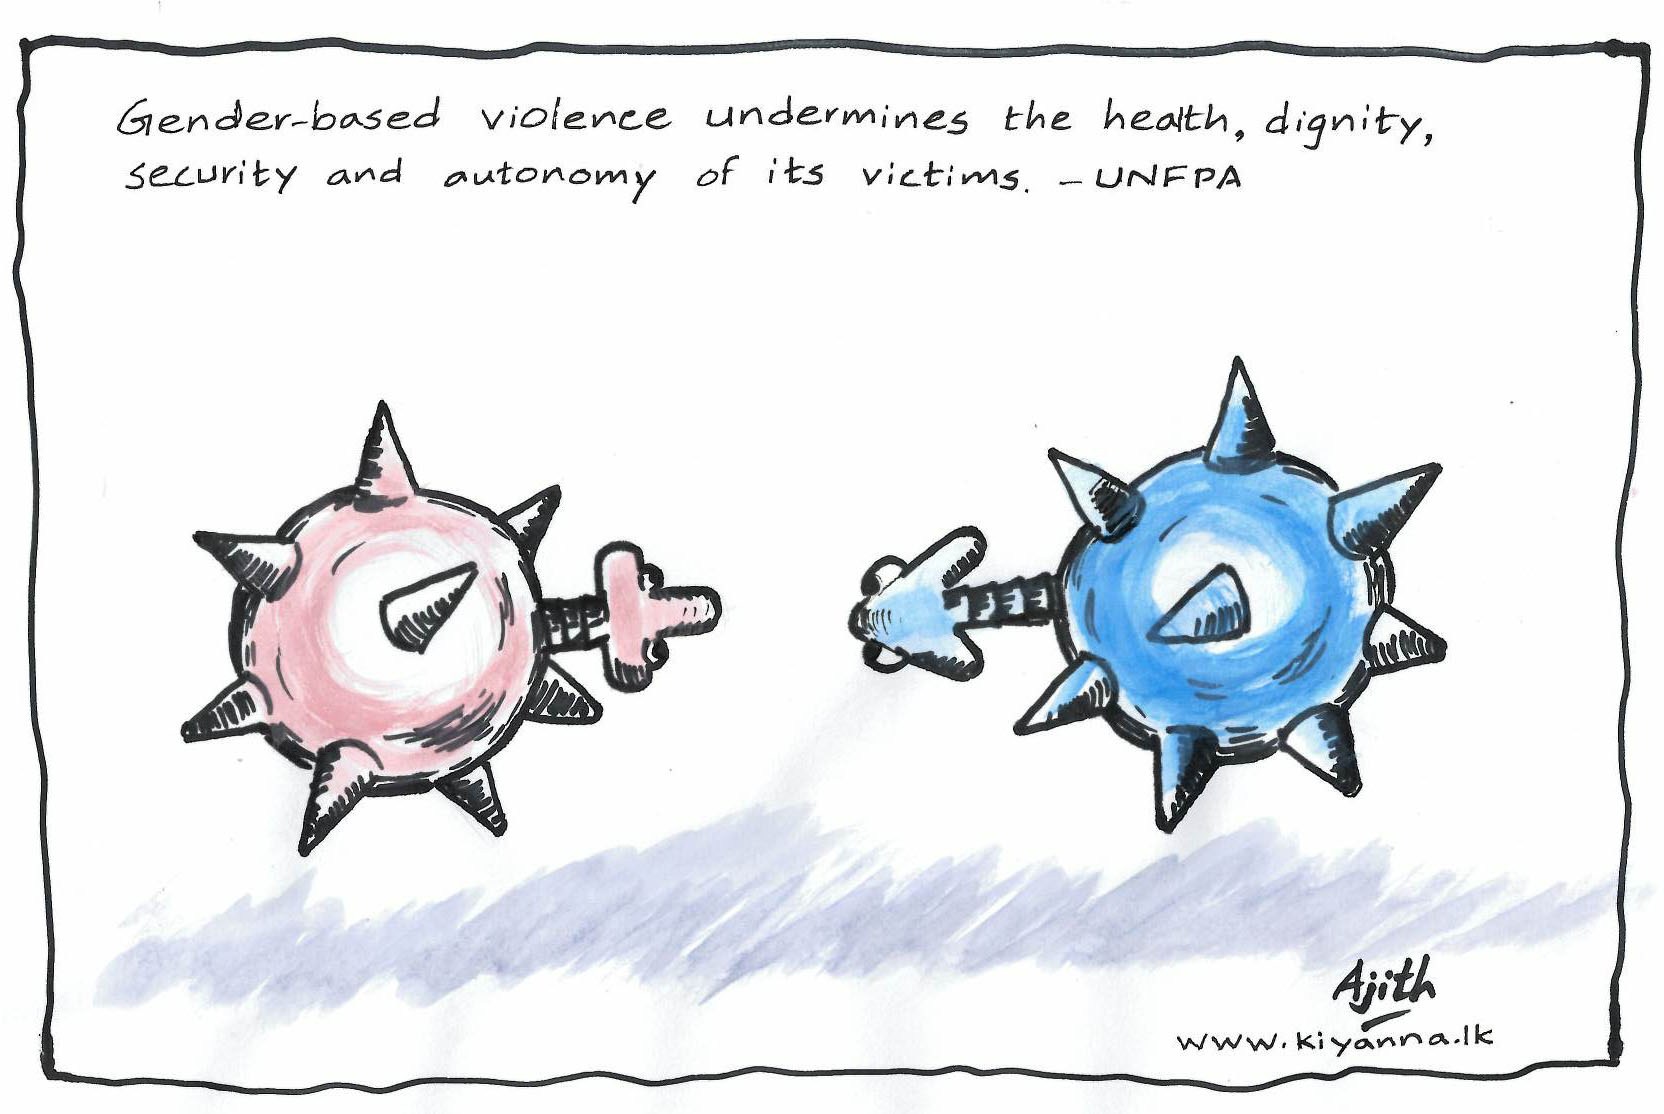 Gender-based violence cartoon